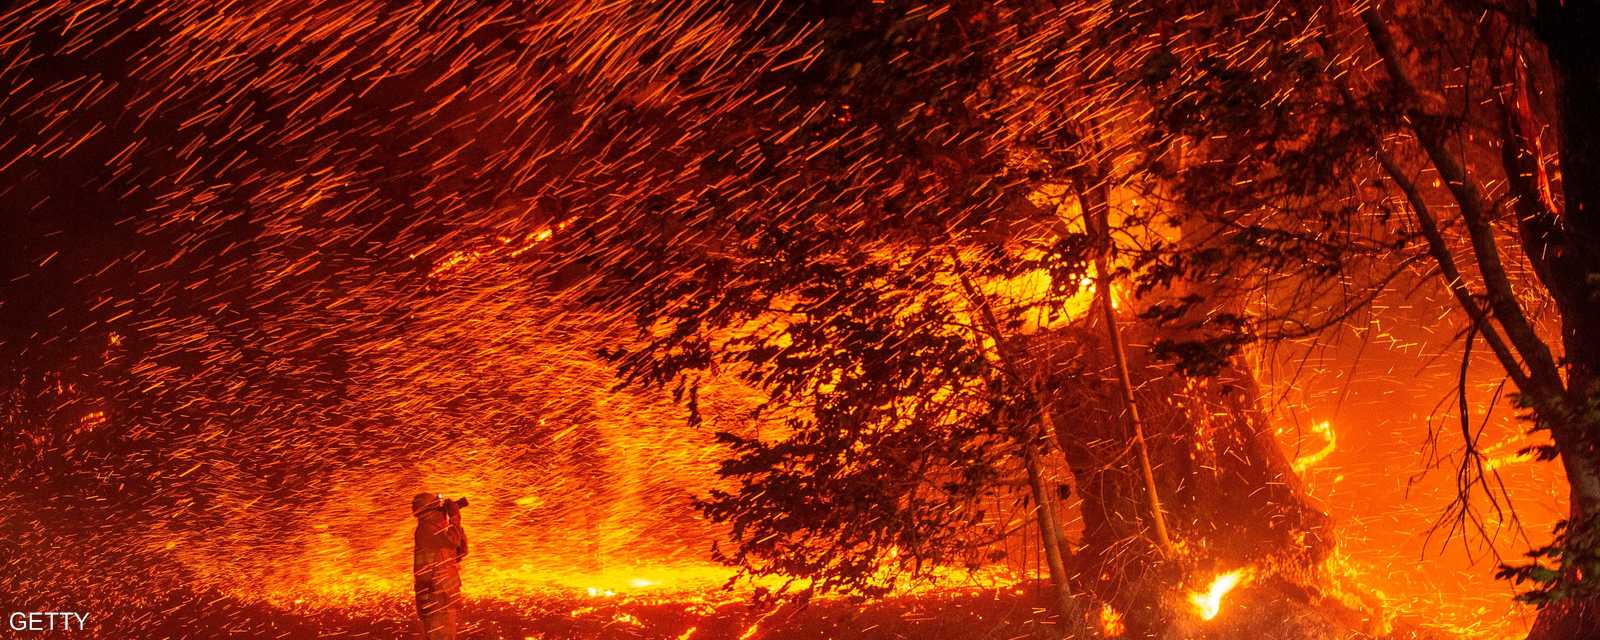 أدت الحرائق إلى إجلاء 180 ألف شخص من منازلهم.